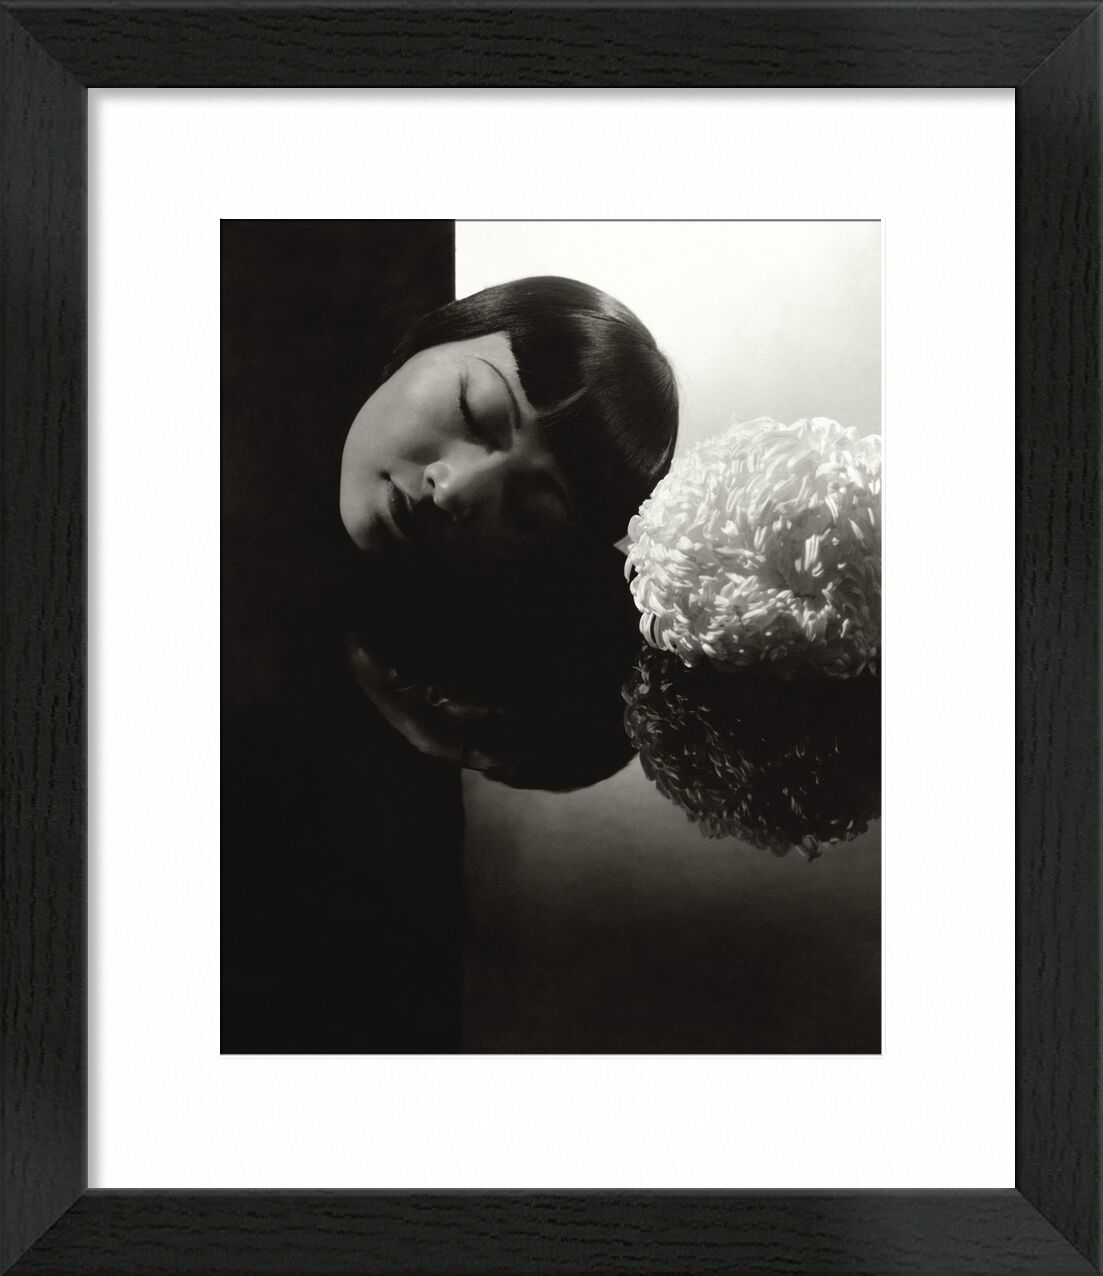 Hollywood confession  Anna May Wong - Edward Steichen 1931 von Bildende Kunst, Prodi Art, Frau, Augen, Schwarz und weiß, edward steichen, Hollywood, Bekenntnis